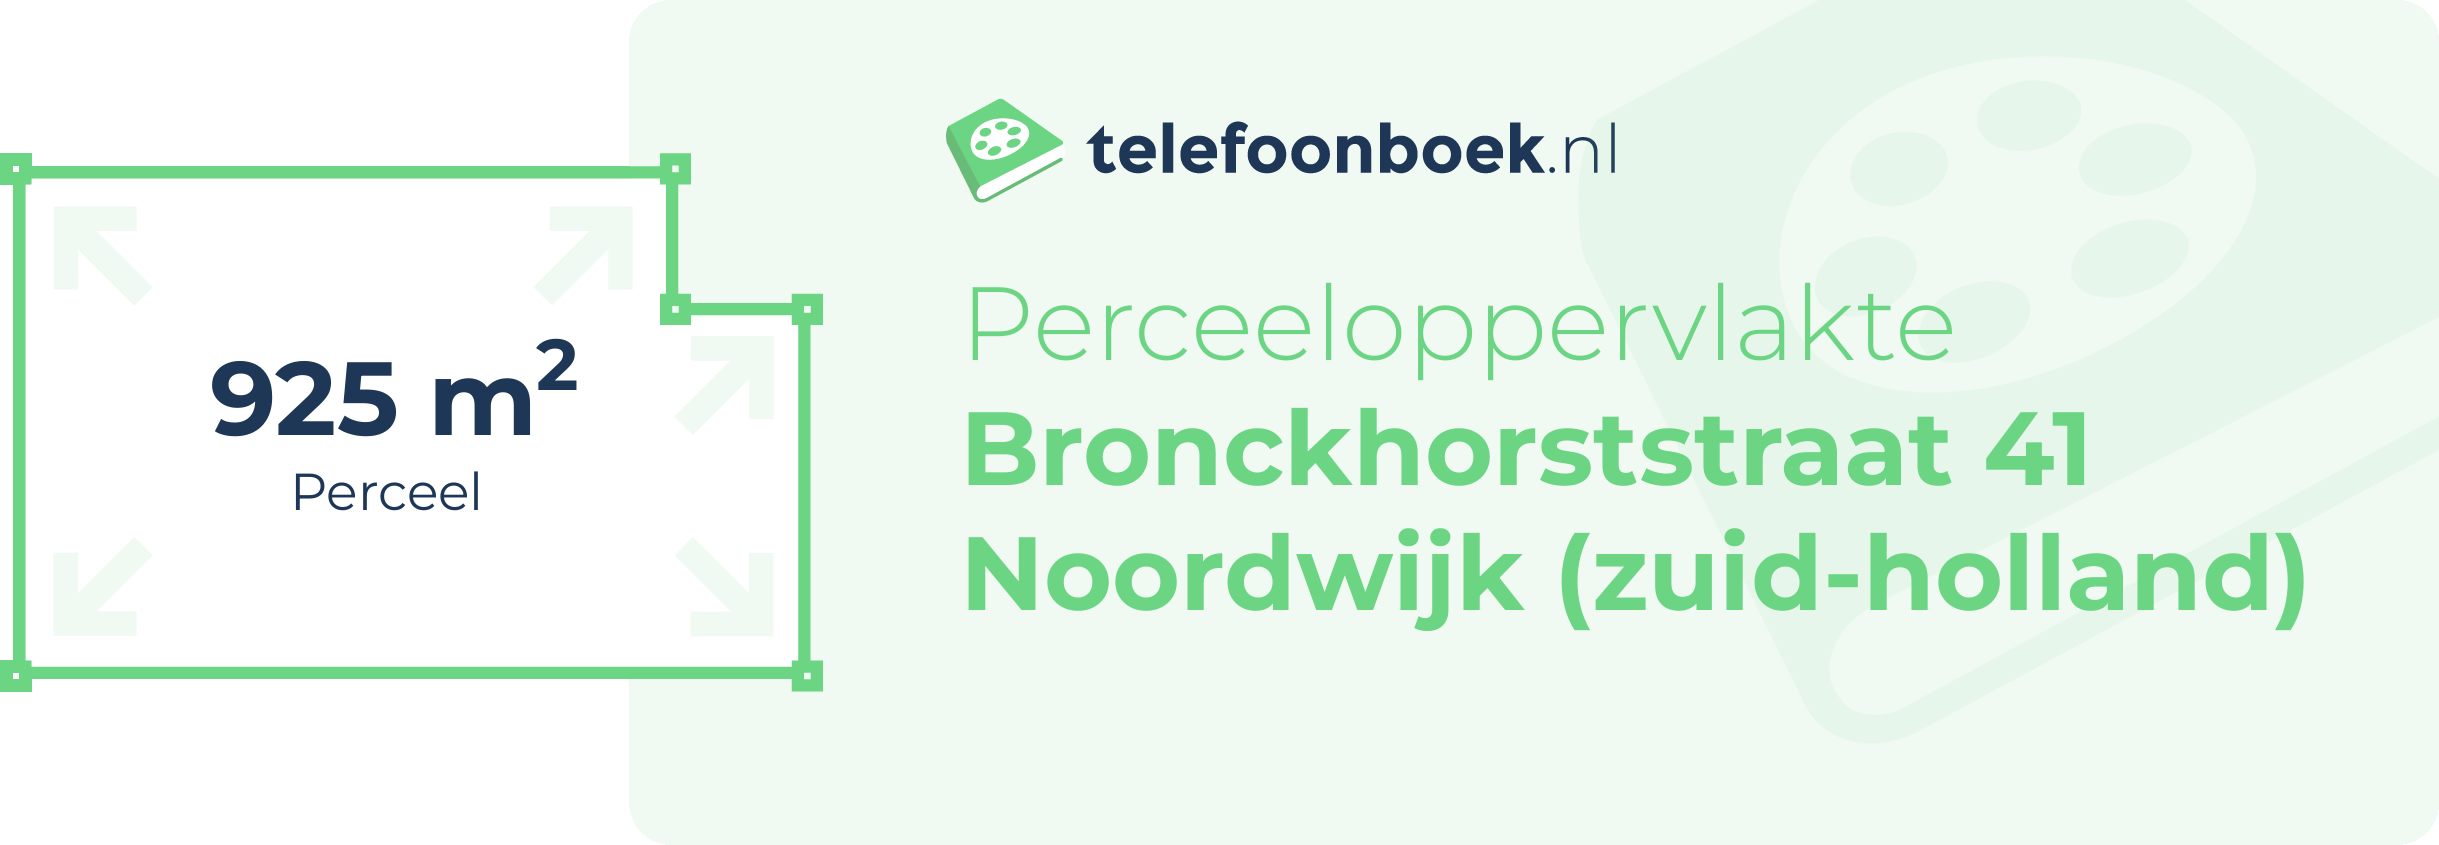 Perceeloppervlakte Bronckhorststraat 41 Noordwijk (Zuid-Holland)